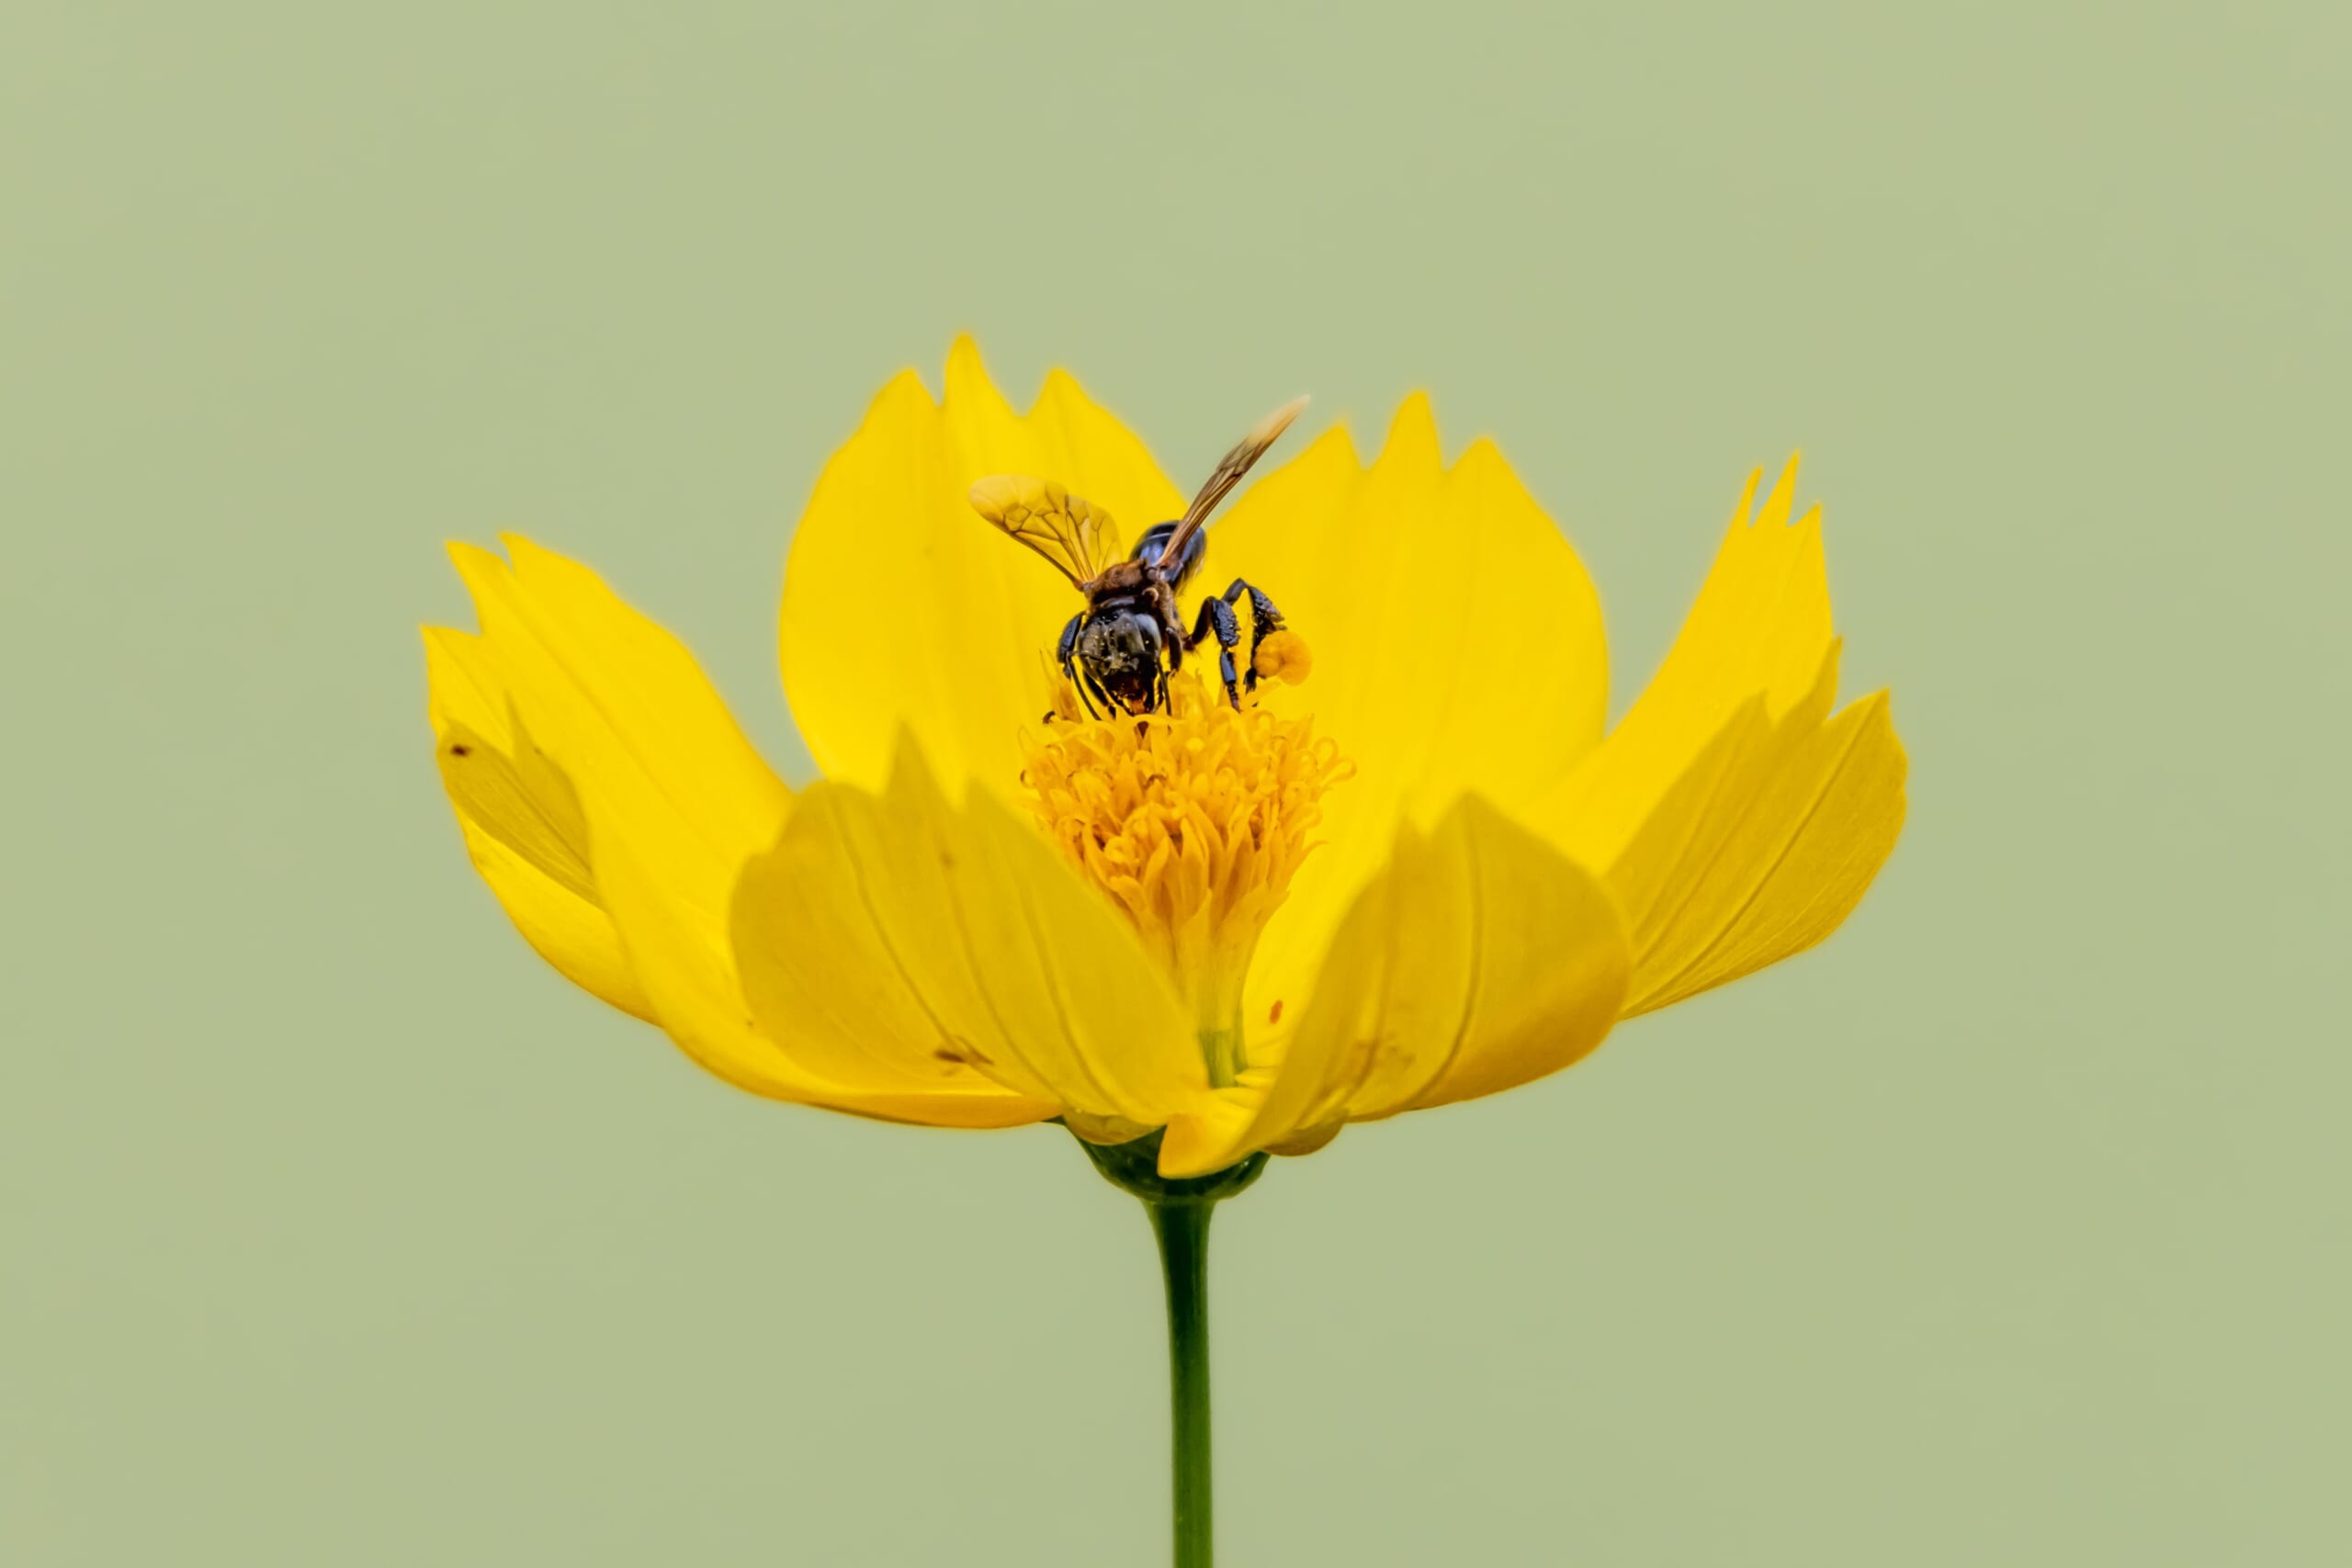 花の蜜を吸う蜂1匹